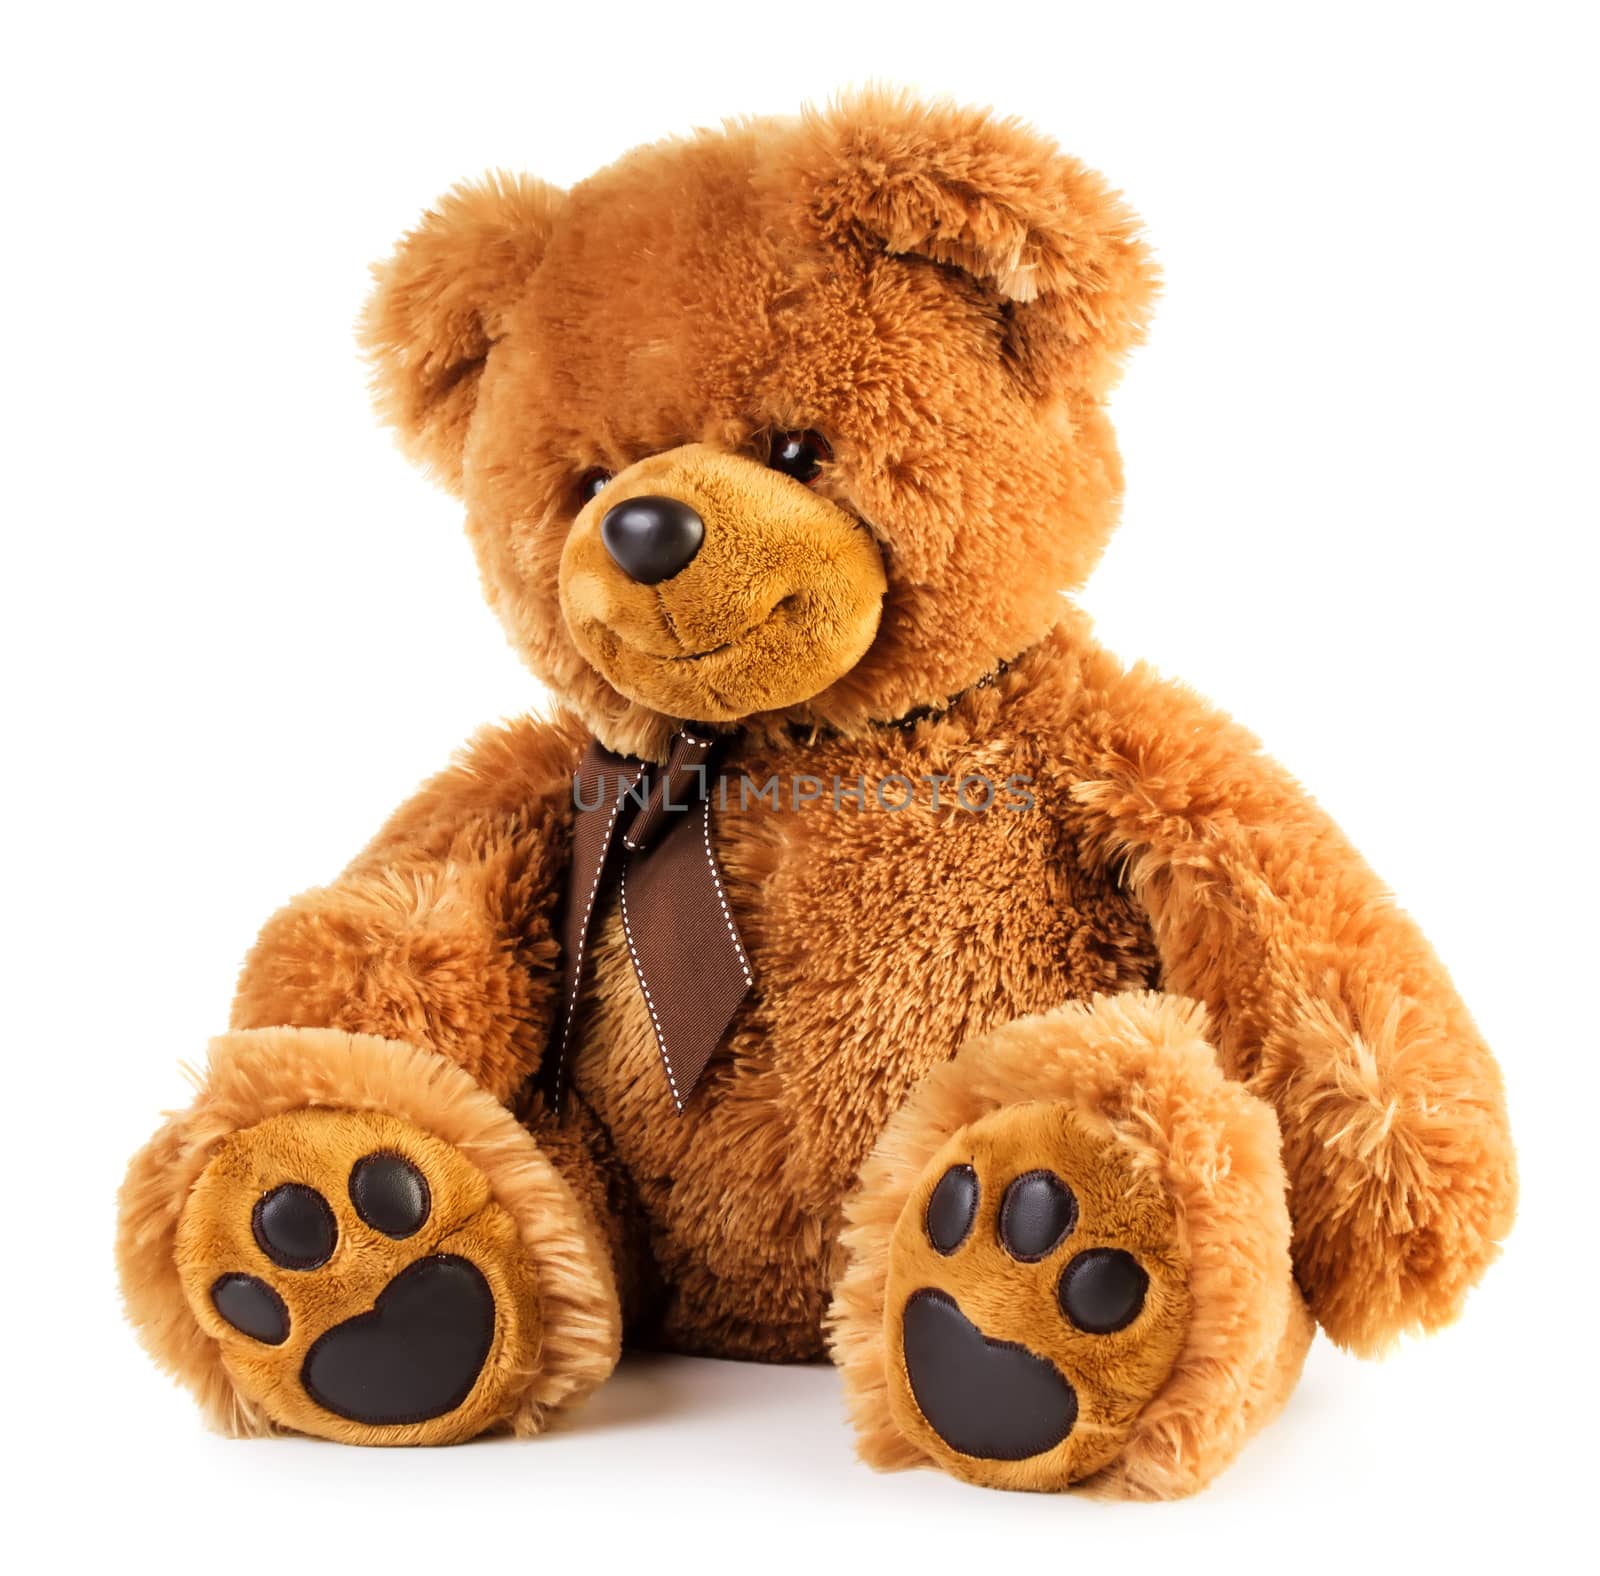 Toy teddy bear by Valengilda